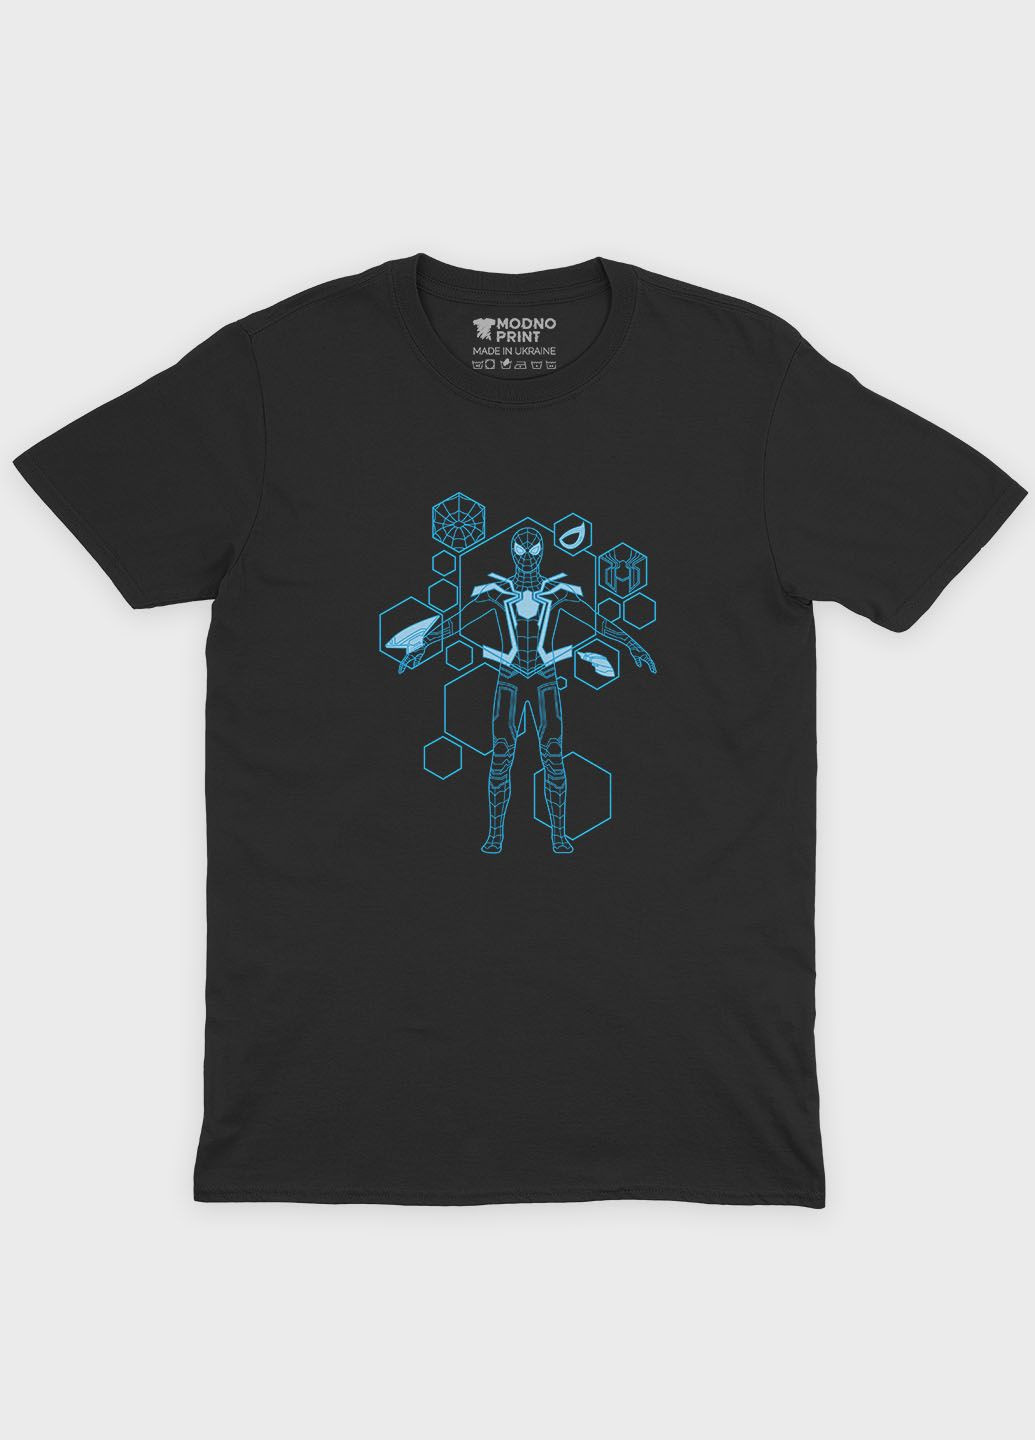 Черная демисезонная футболка для мальчика с принтом супергероя - человек-паук (ts001-1-bl-006-014-094-b) Modno